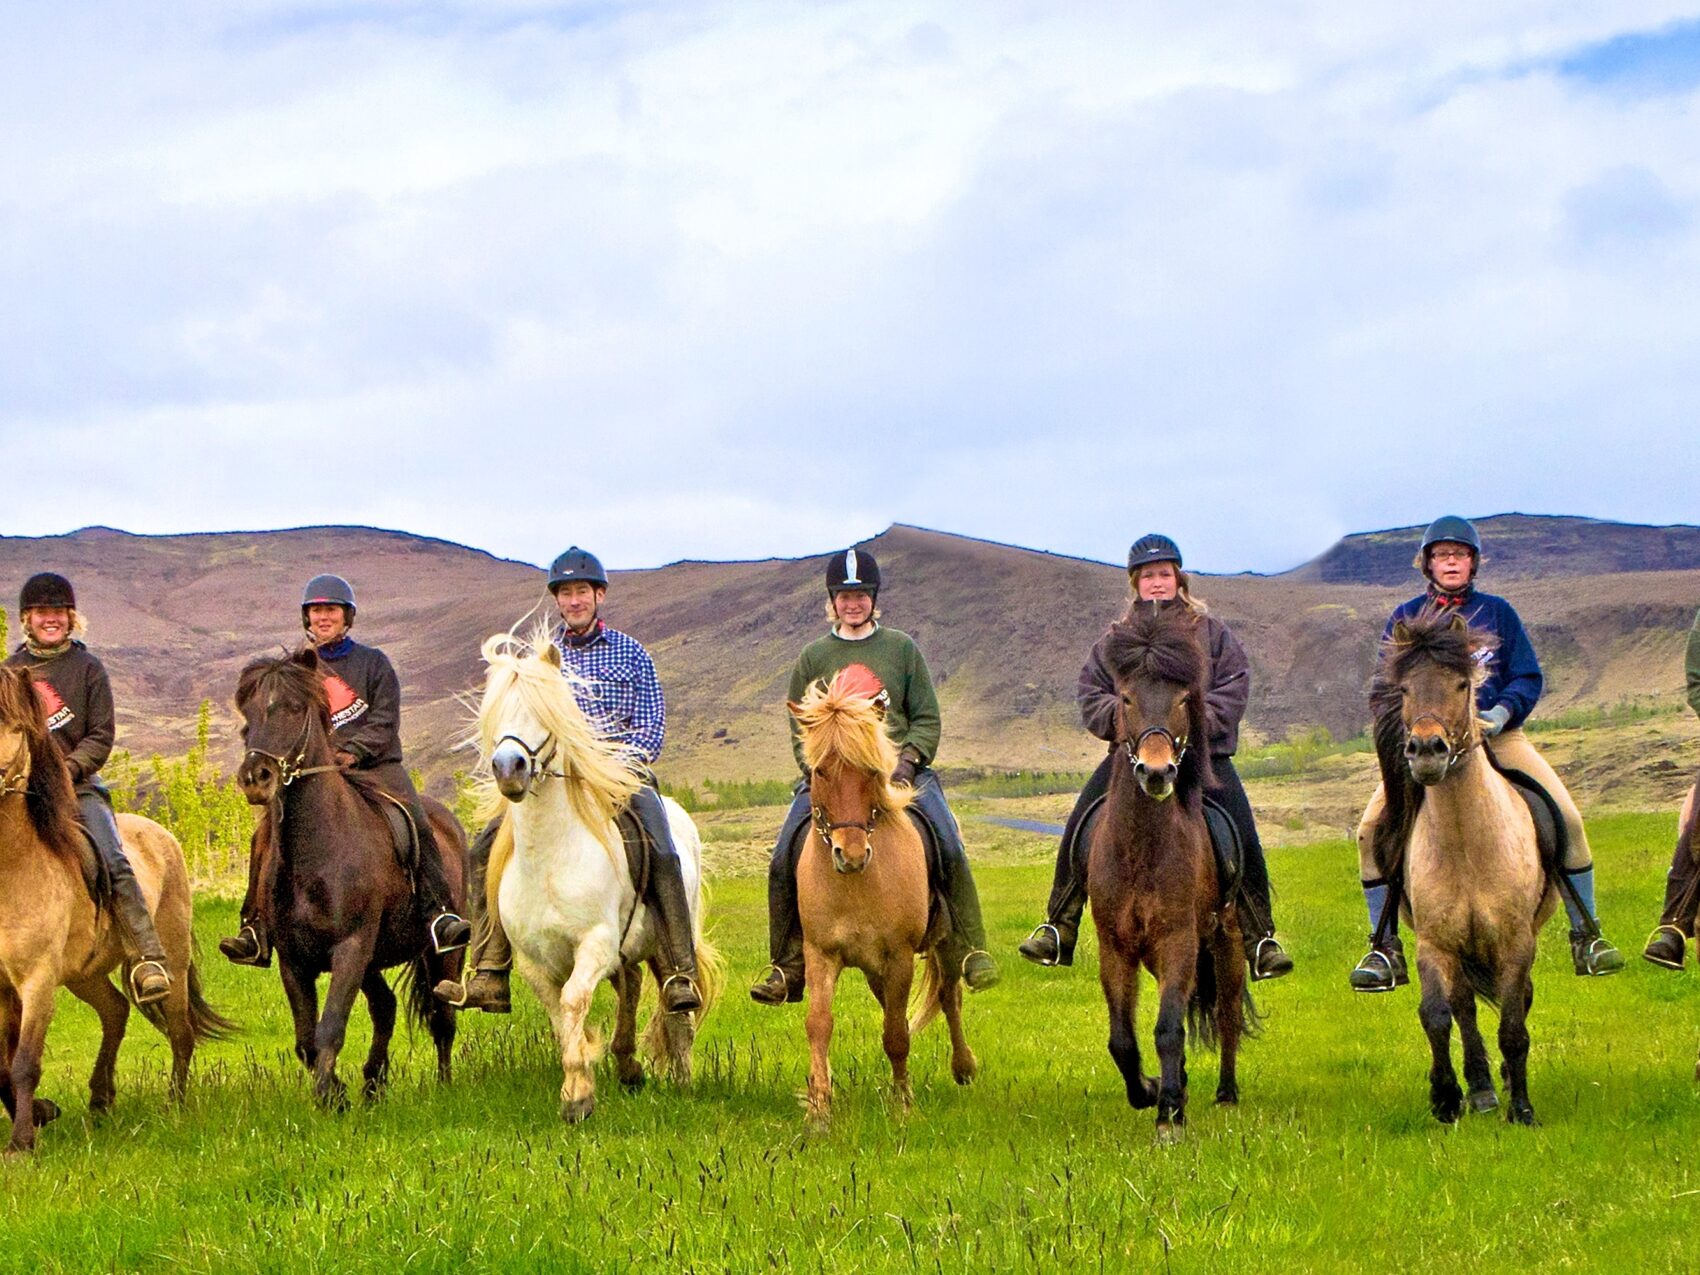 Reiten in Island mit Eldhestar; 
acht Islandpferde mit Reitern in einer Reihe auf einer grünen Wiese